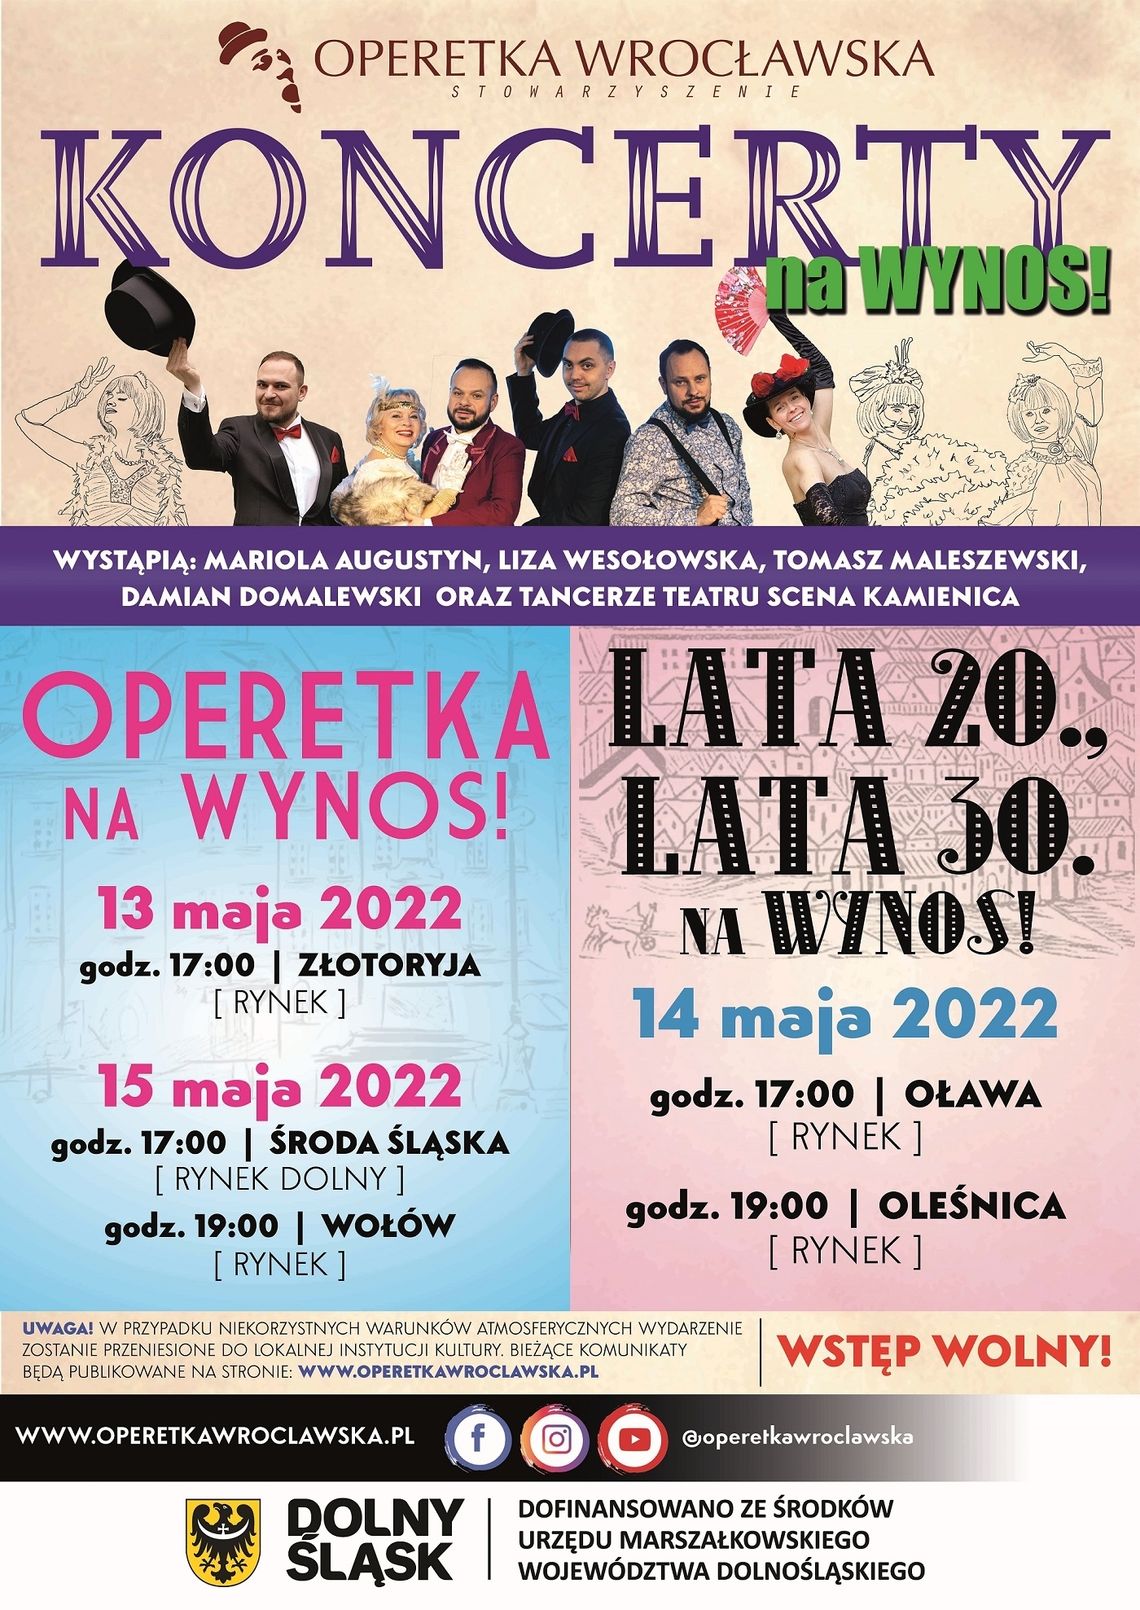 Koncert operetkowy "Lata 20., lata 30. na wynos!"